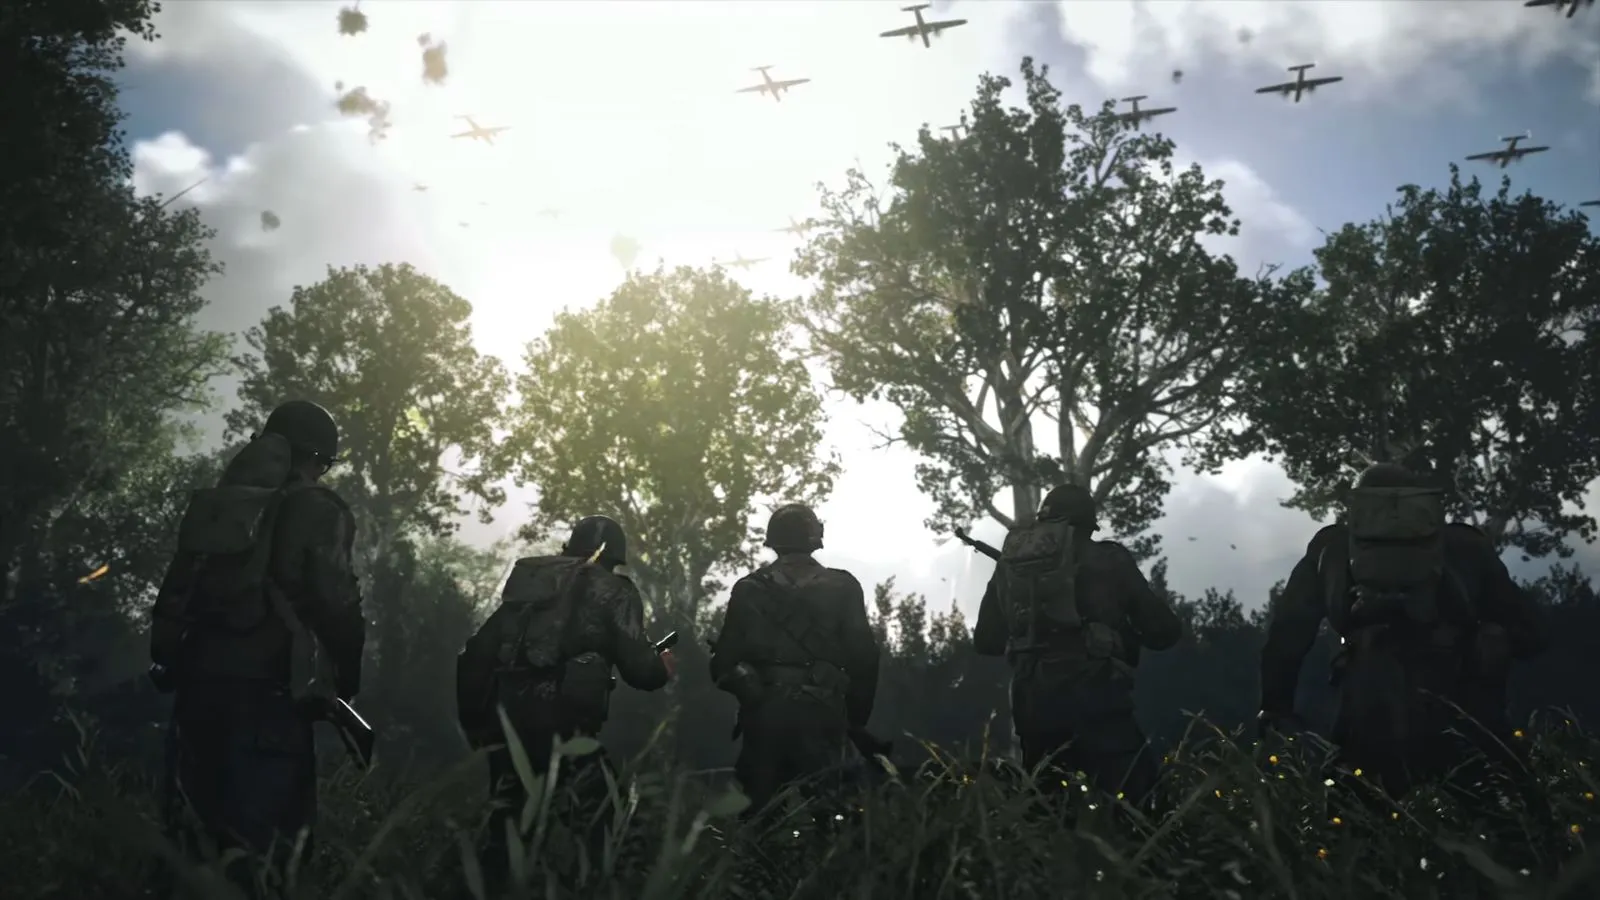 Bild von Soldaten auf einem Feld in einem Waldlöser mit Kampfflächen im Wachkrieg. Der Himmel befindet sich in einer blauen Färbung und ein Lichtstrahl streift durch